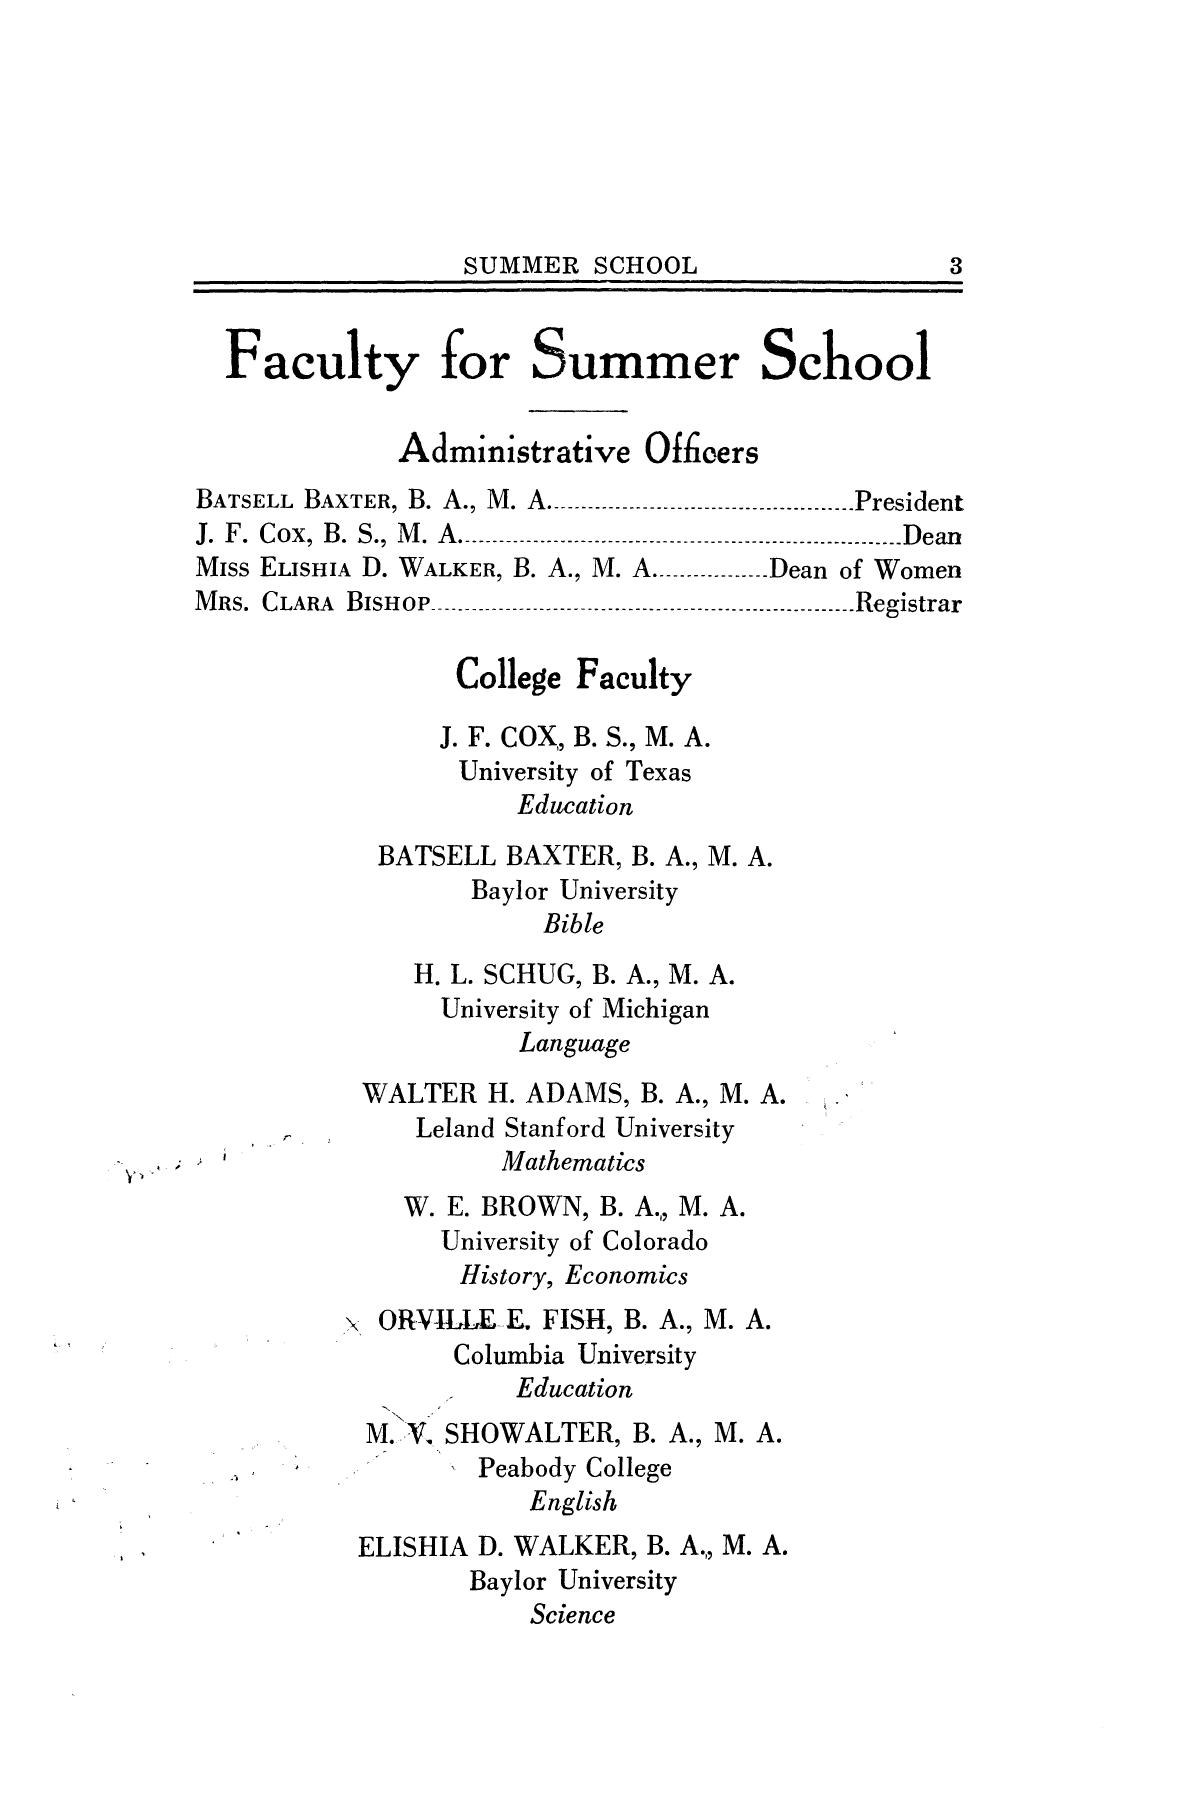 Catalog of Abilene Christian College, 1928
                                                
                                                    3
                                                